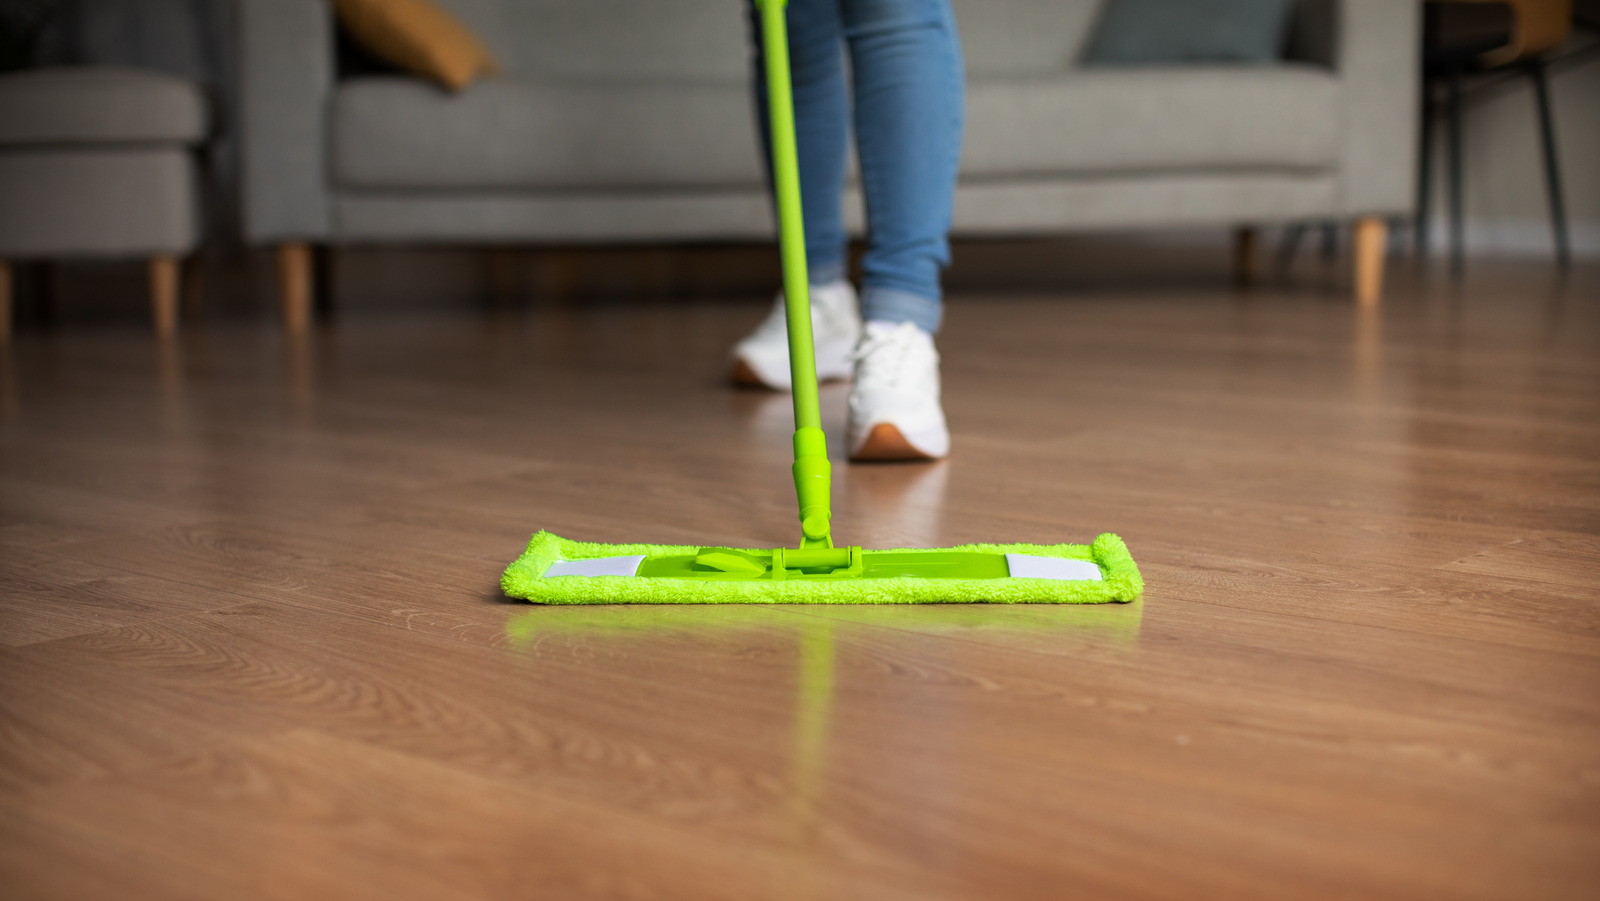 How to clean vinyl floors